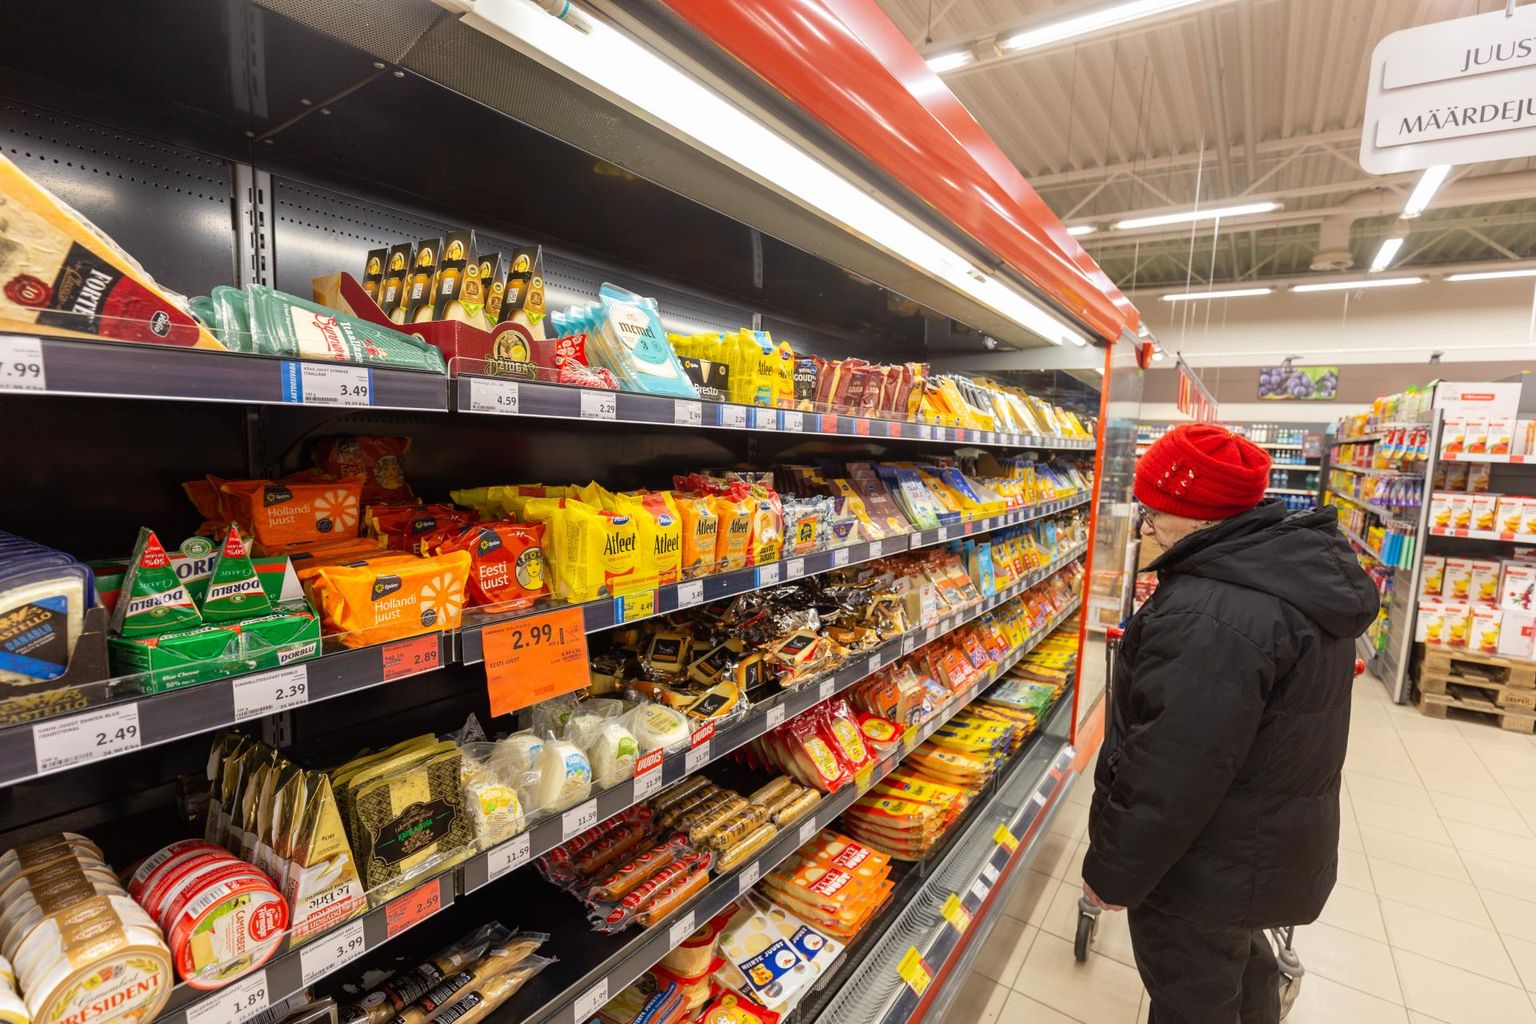 Toidukaubad on viimasel aastal hinnatõusu vedanud. Pilt on illustratiivne.